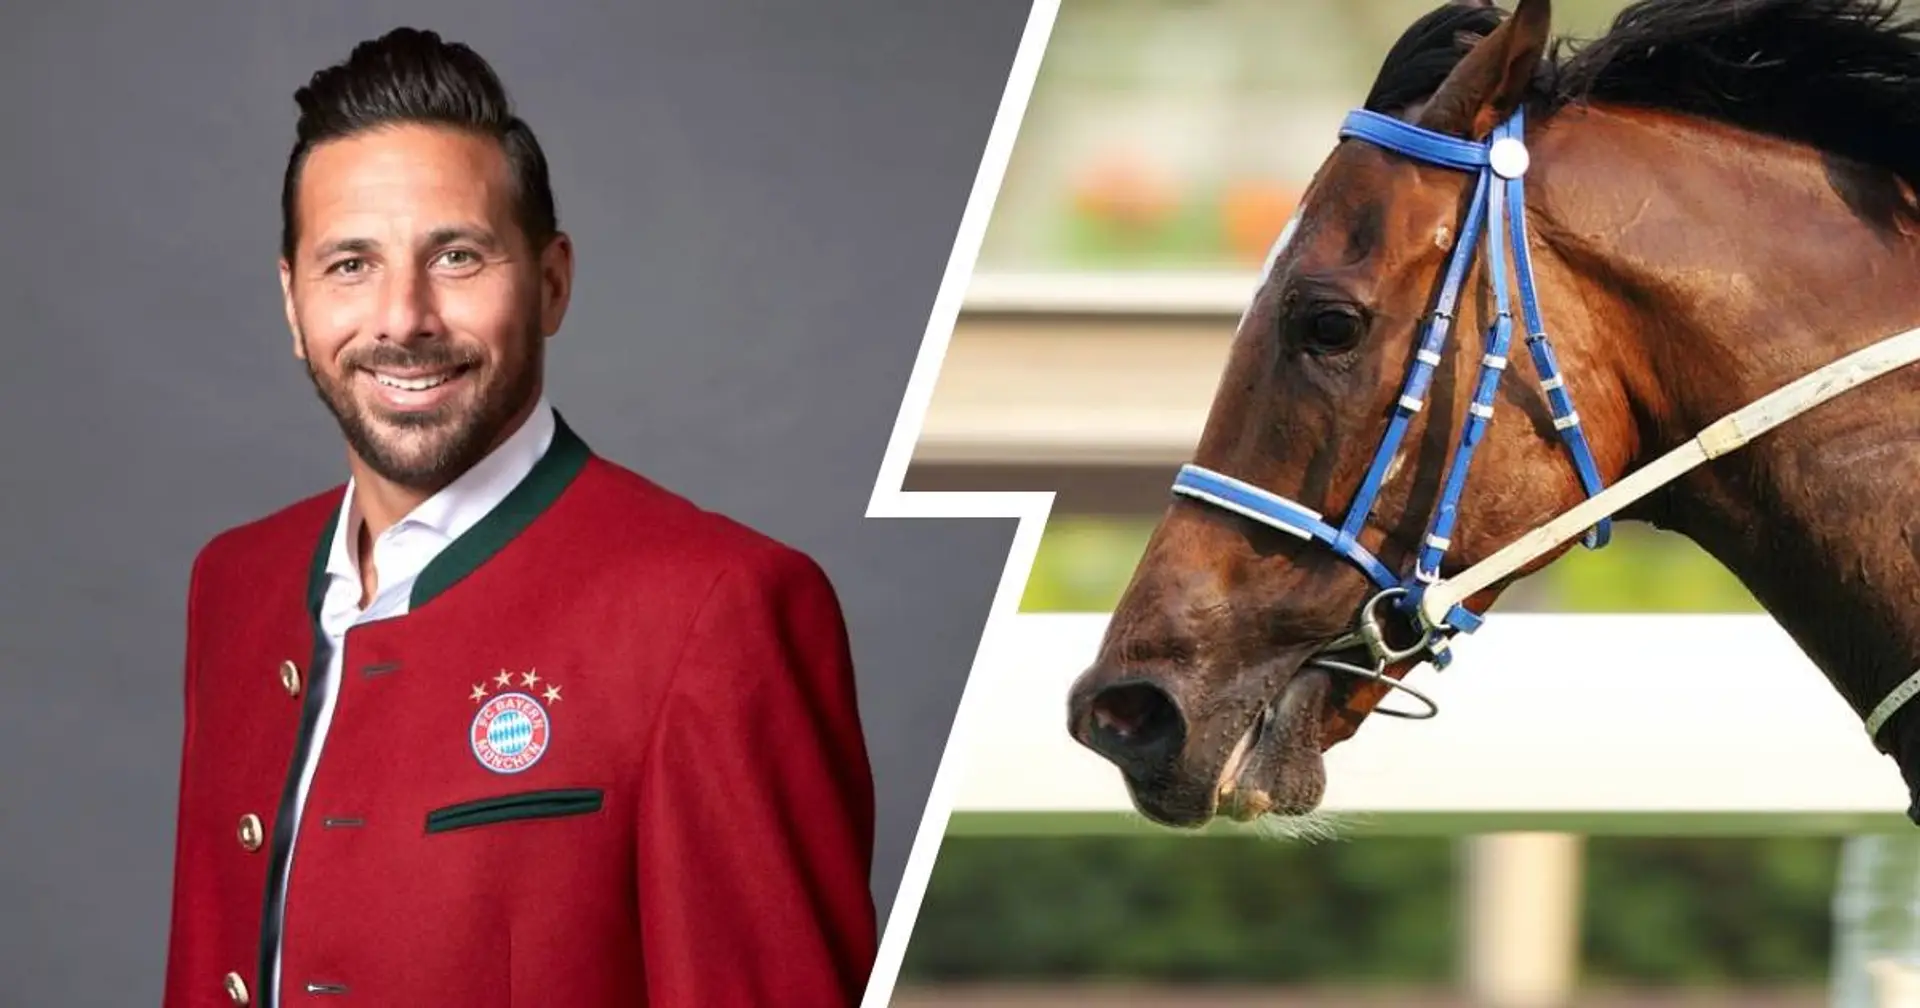 Claudio Pizarro hat seinem Rennpferd einen sehr kuriosen Namen gegeben